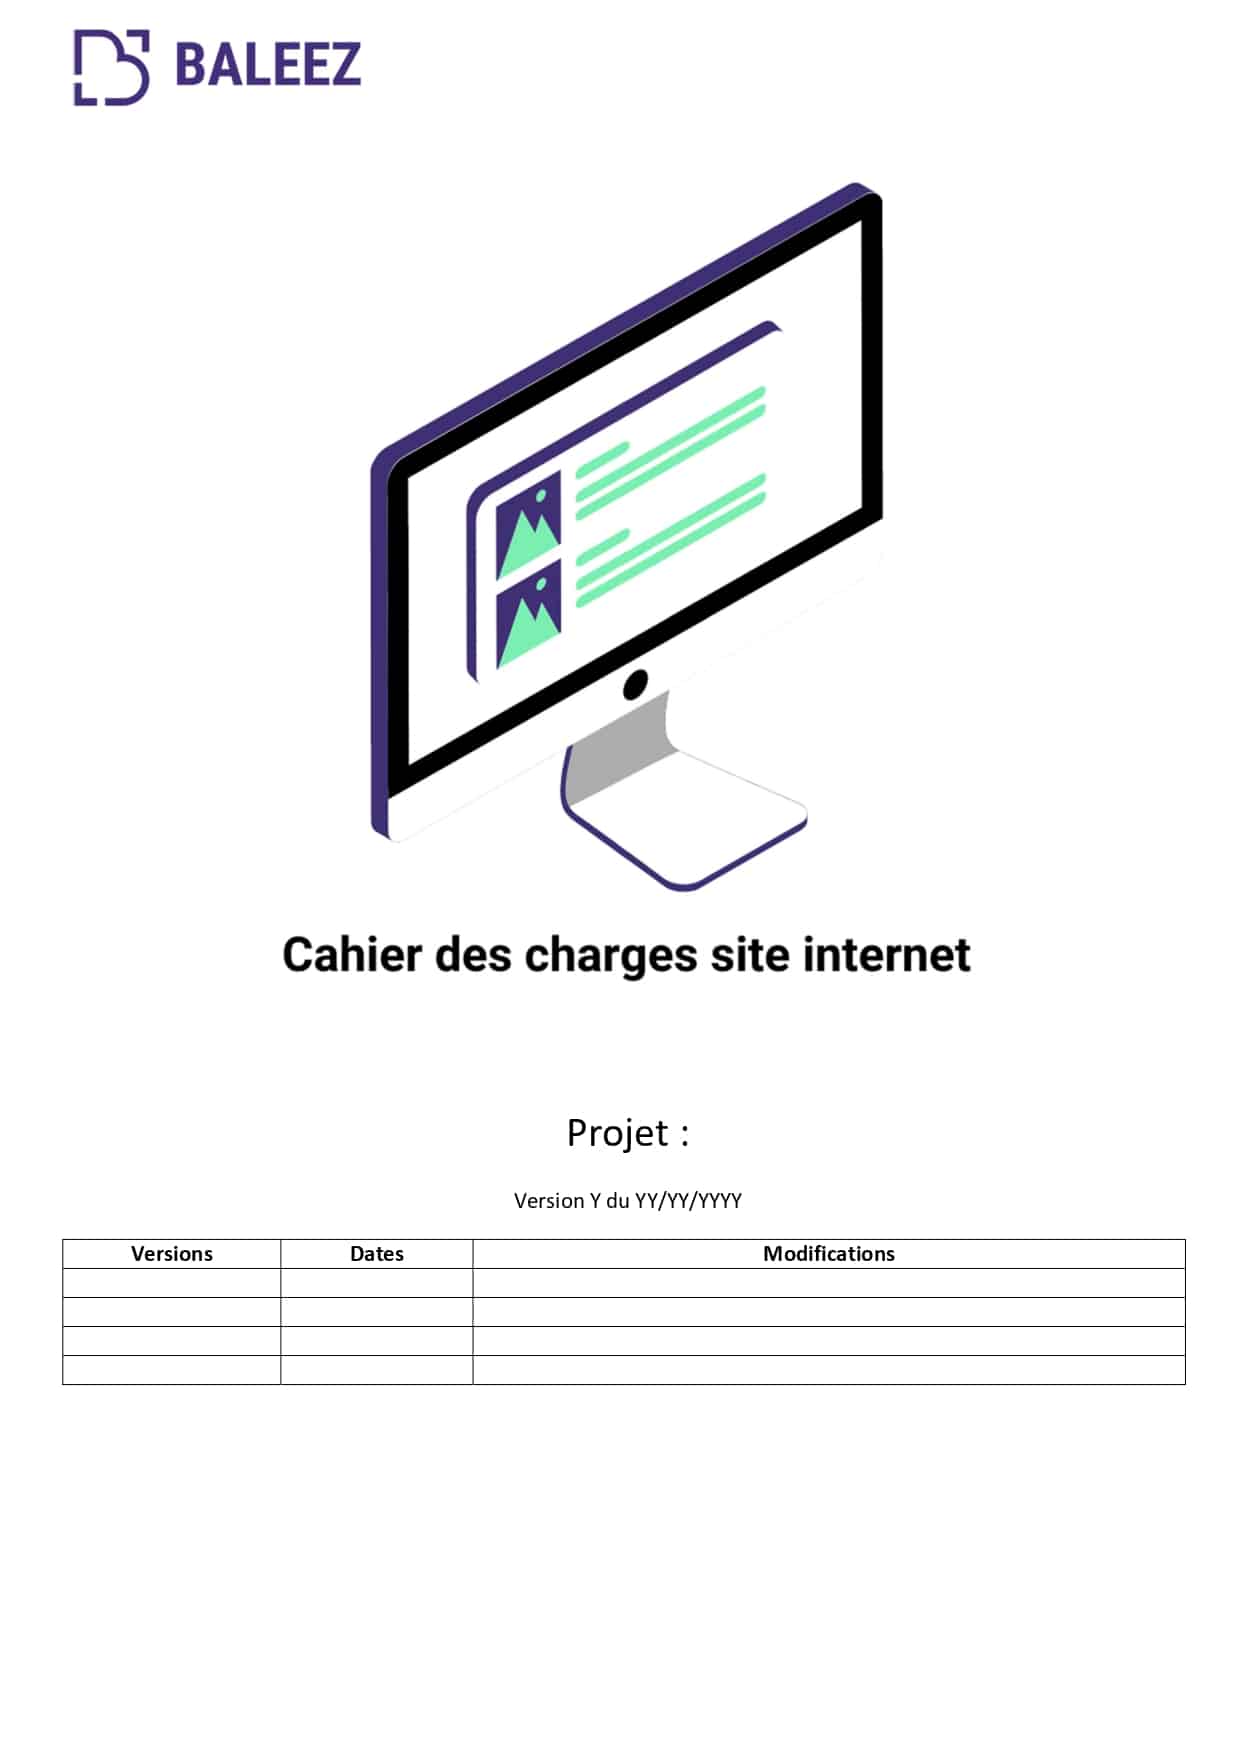 Le cahier des charges qui est réalisé chez Baleez pour préparer la conception d'un site internet